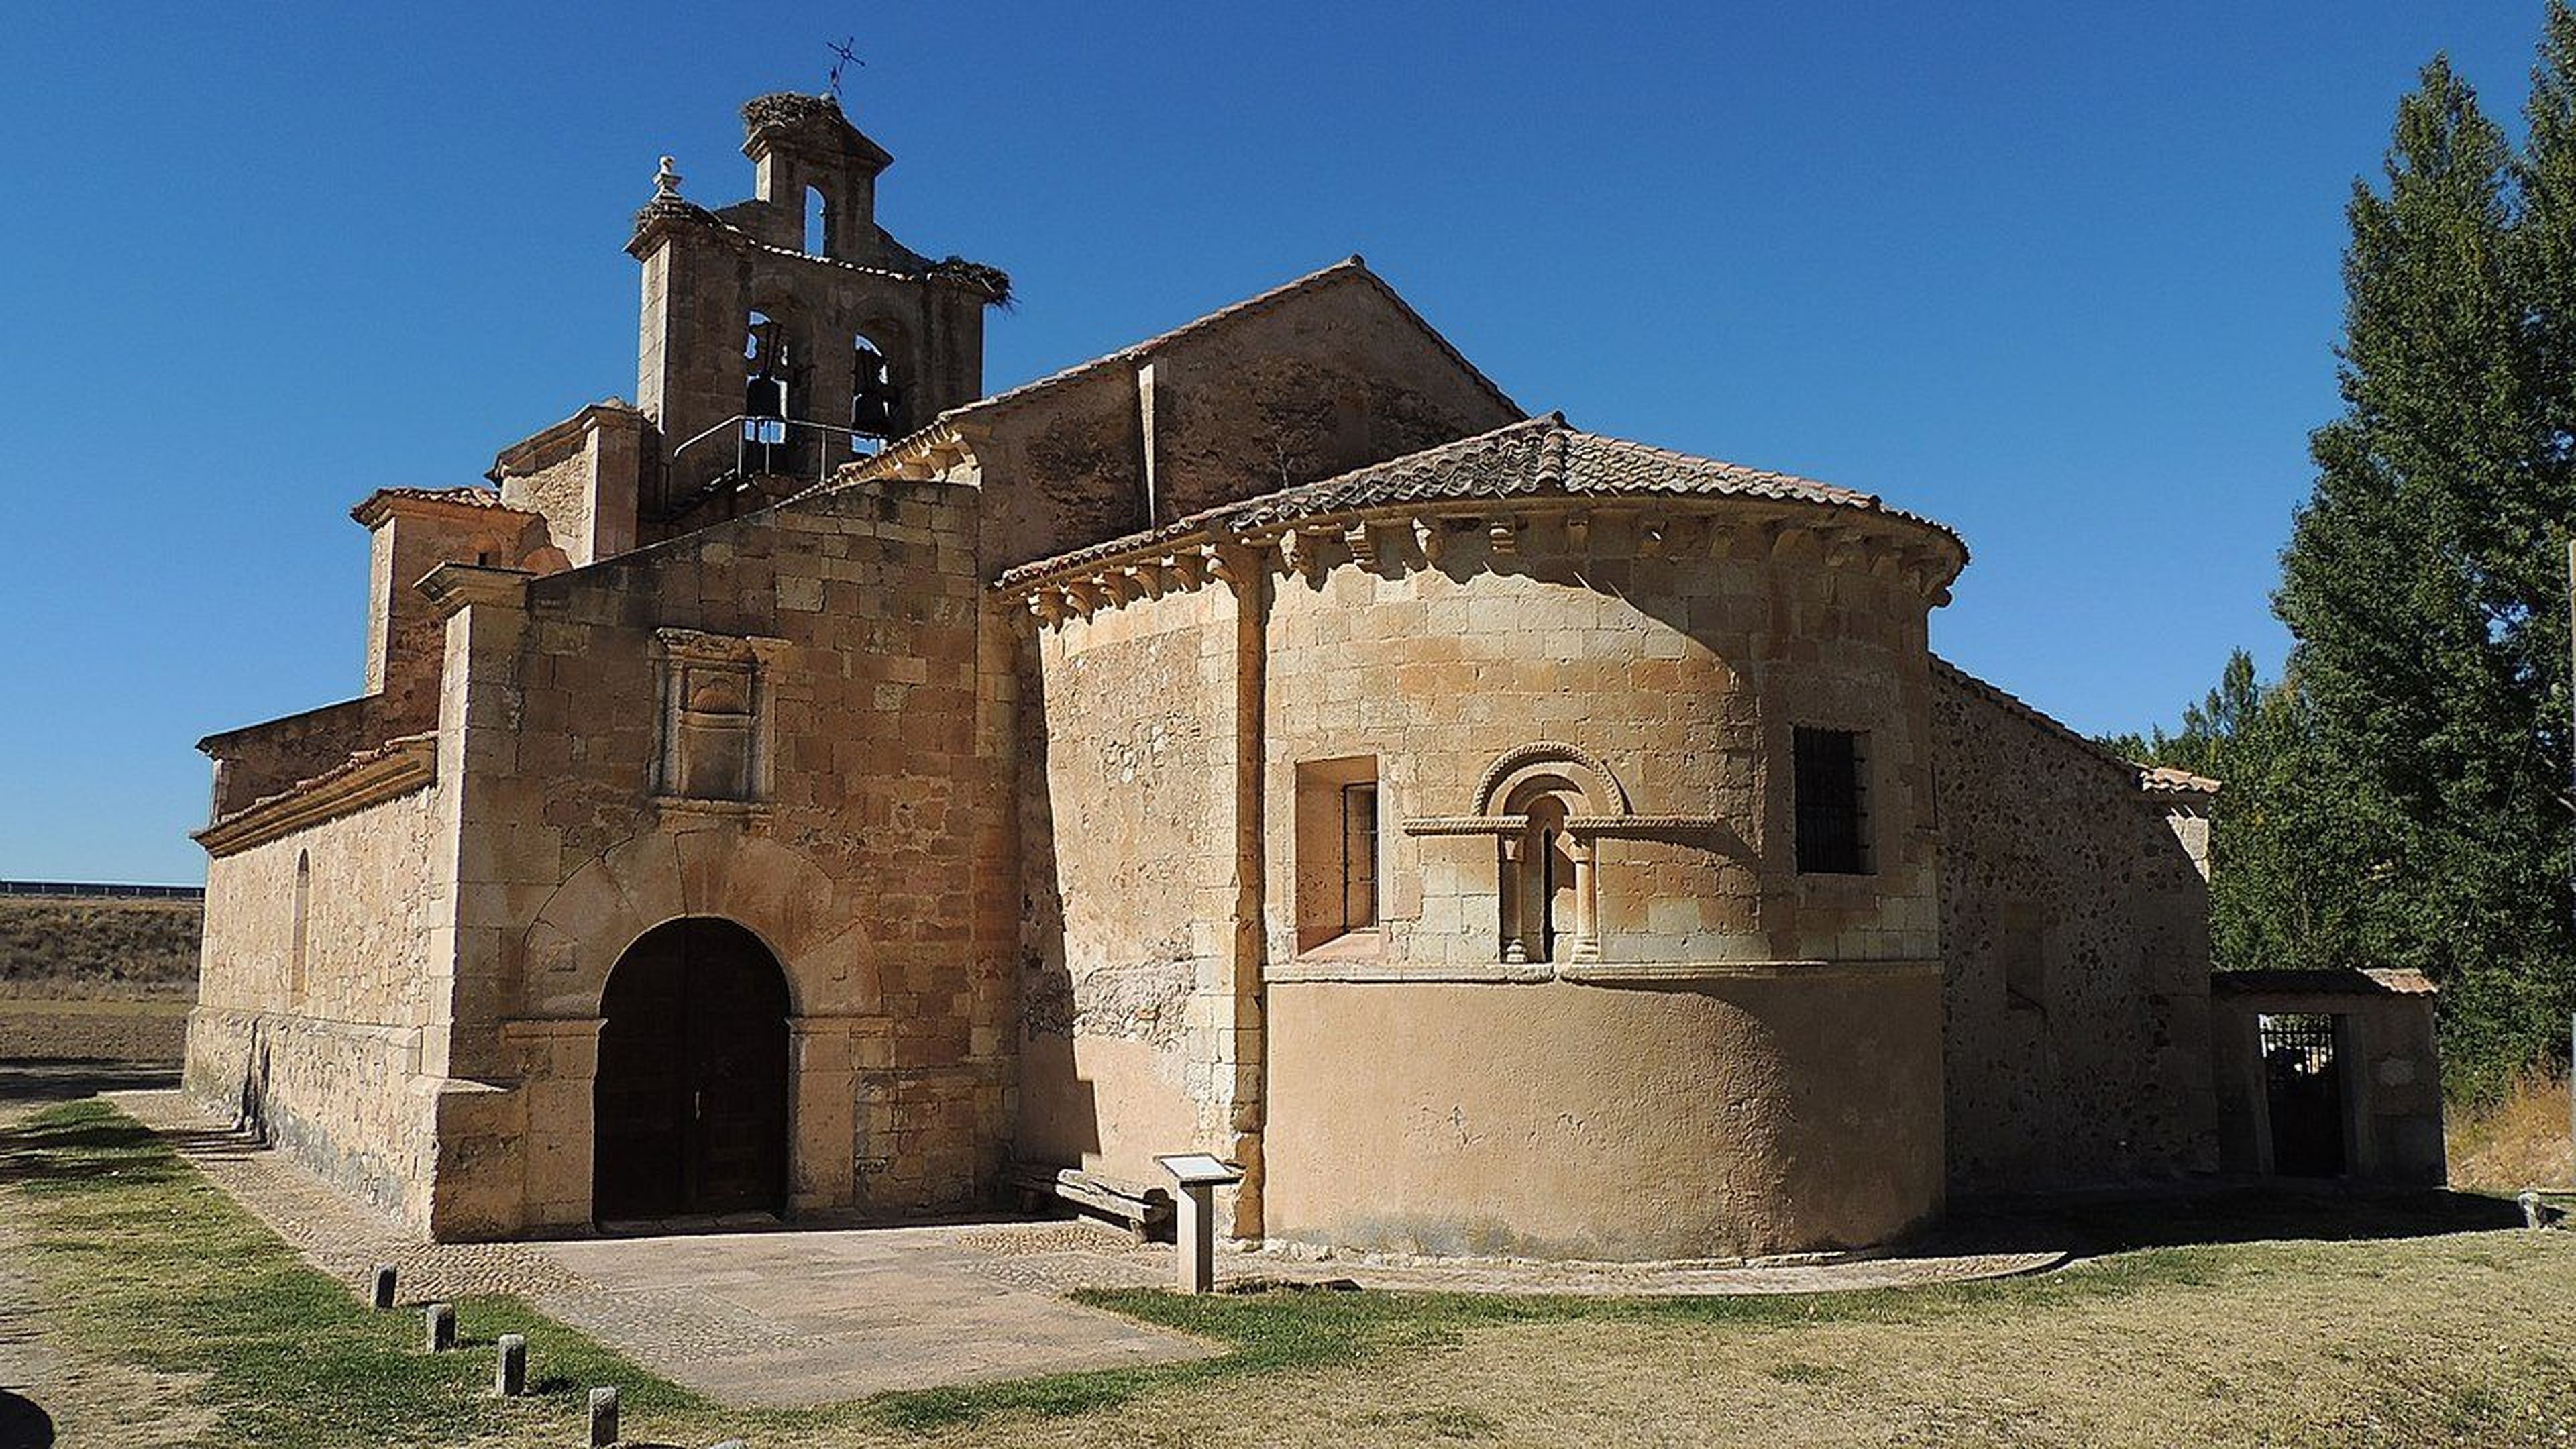 Castillejo de Mesleón (Segovia)